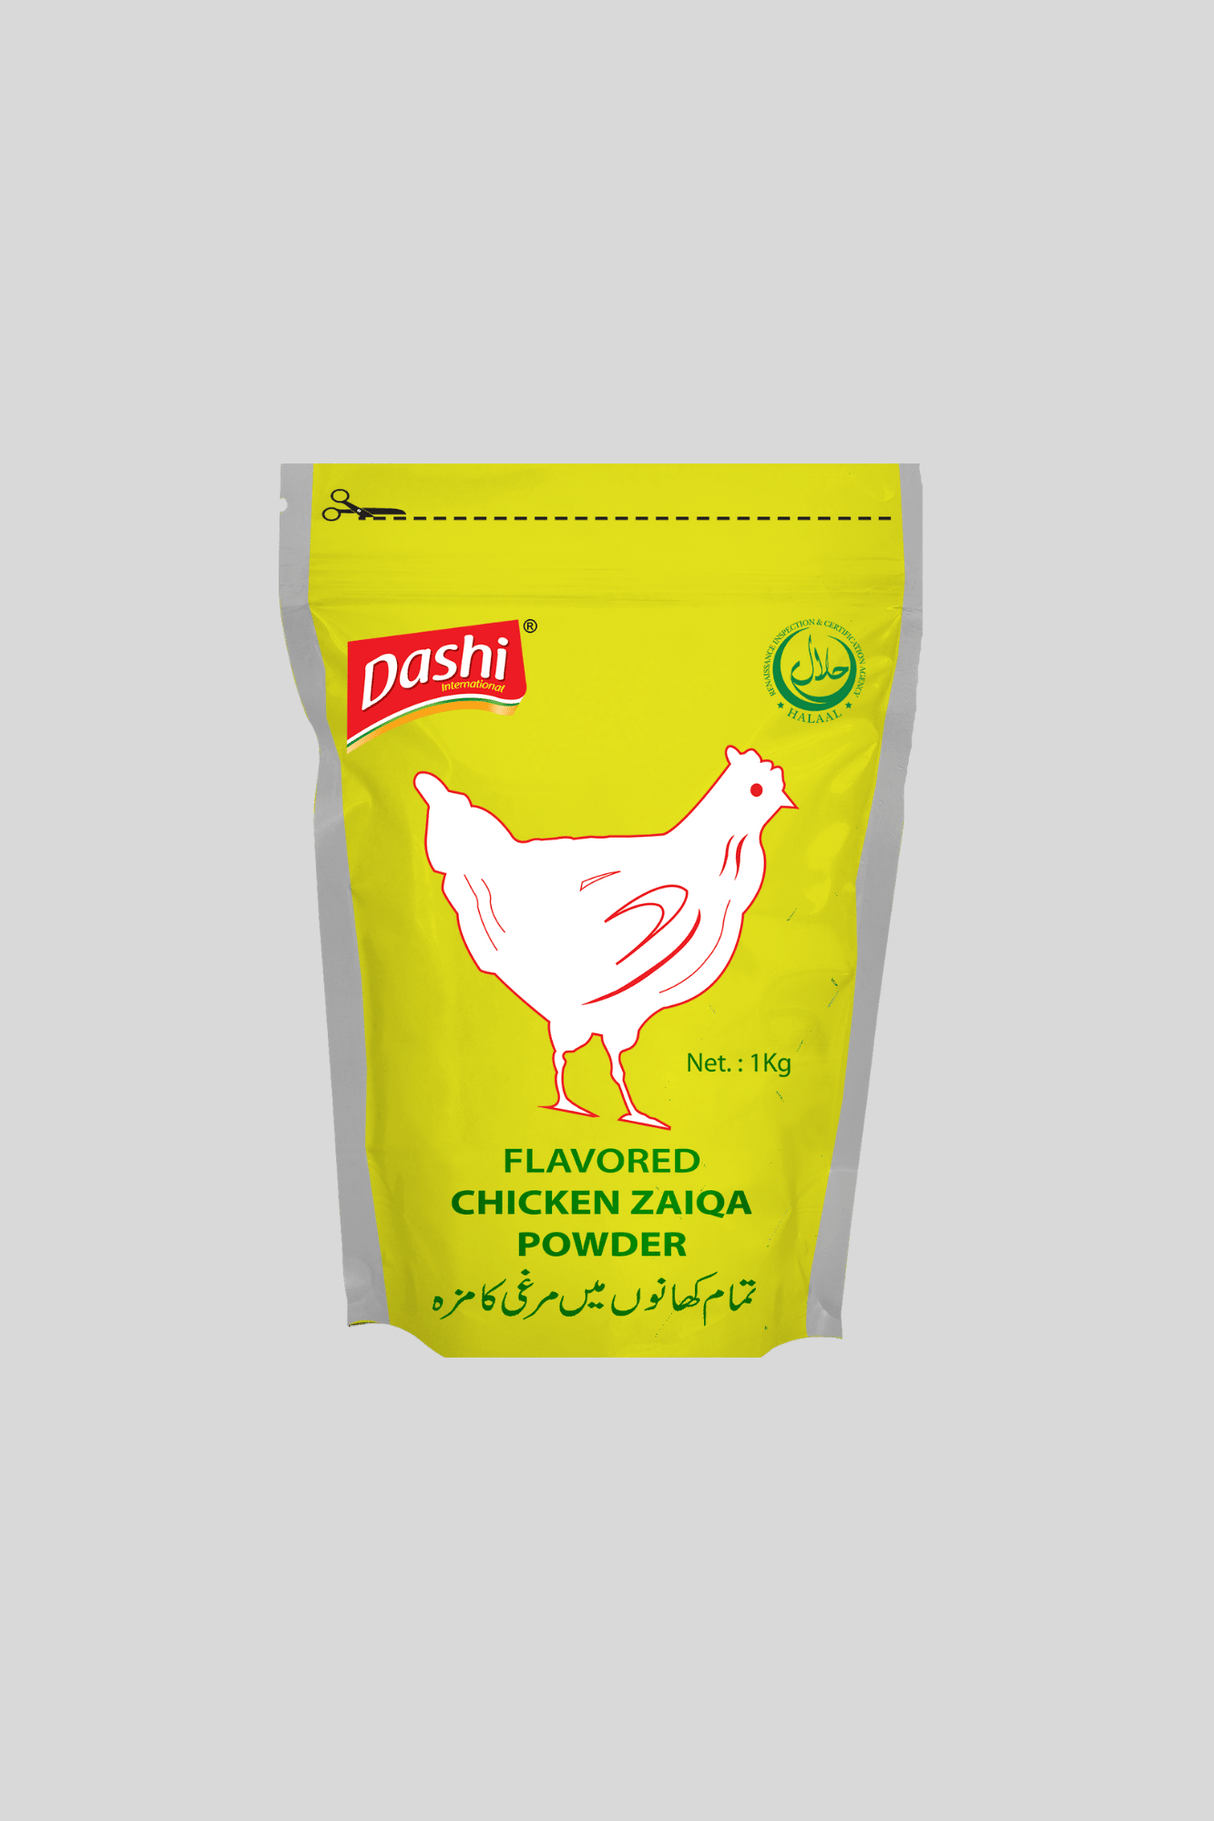 dashi chicken powder 1kg